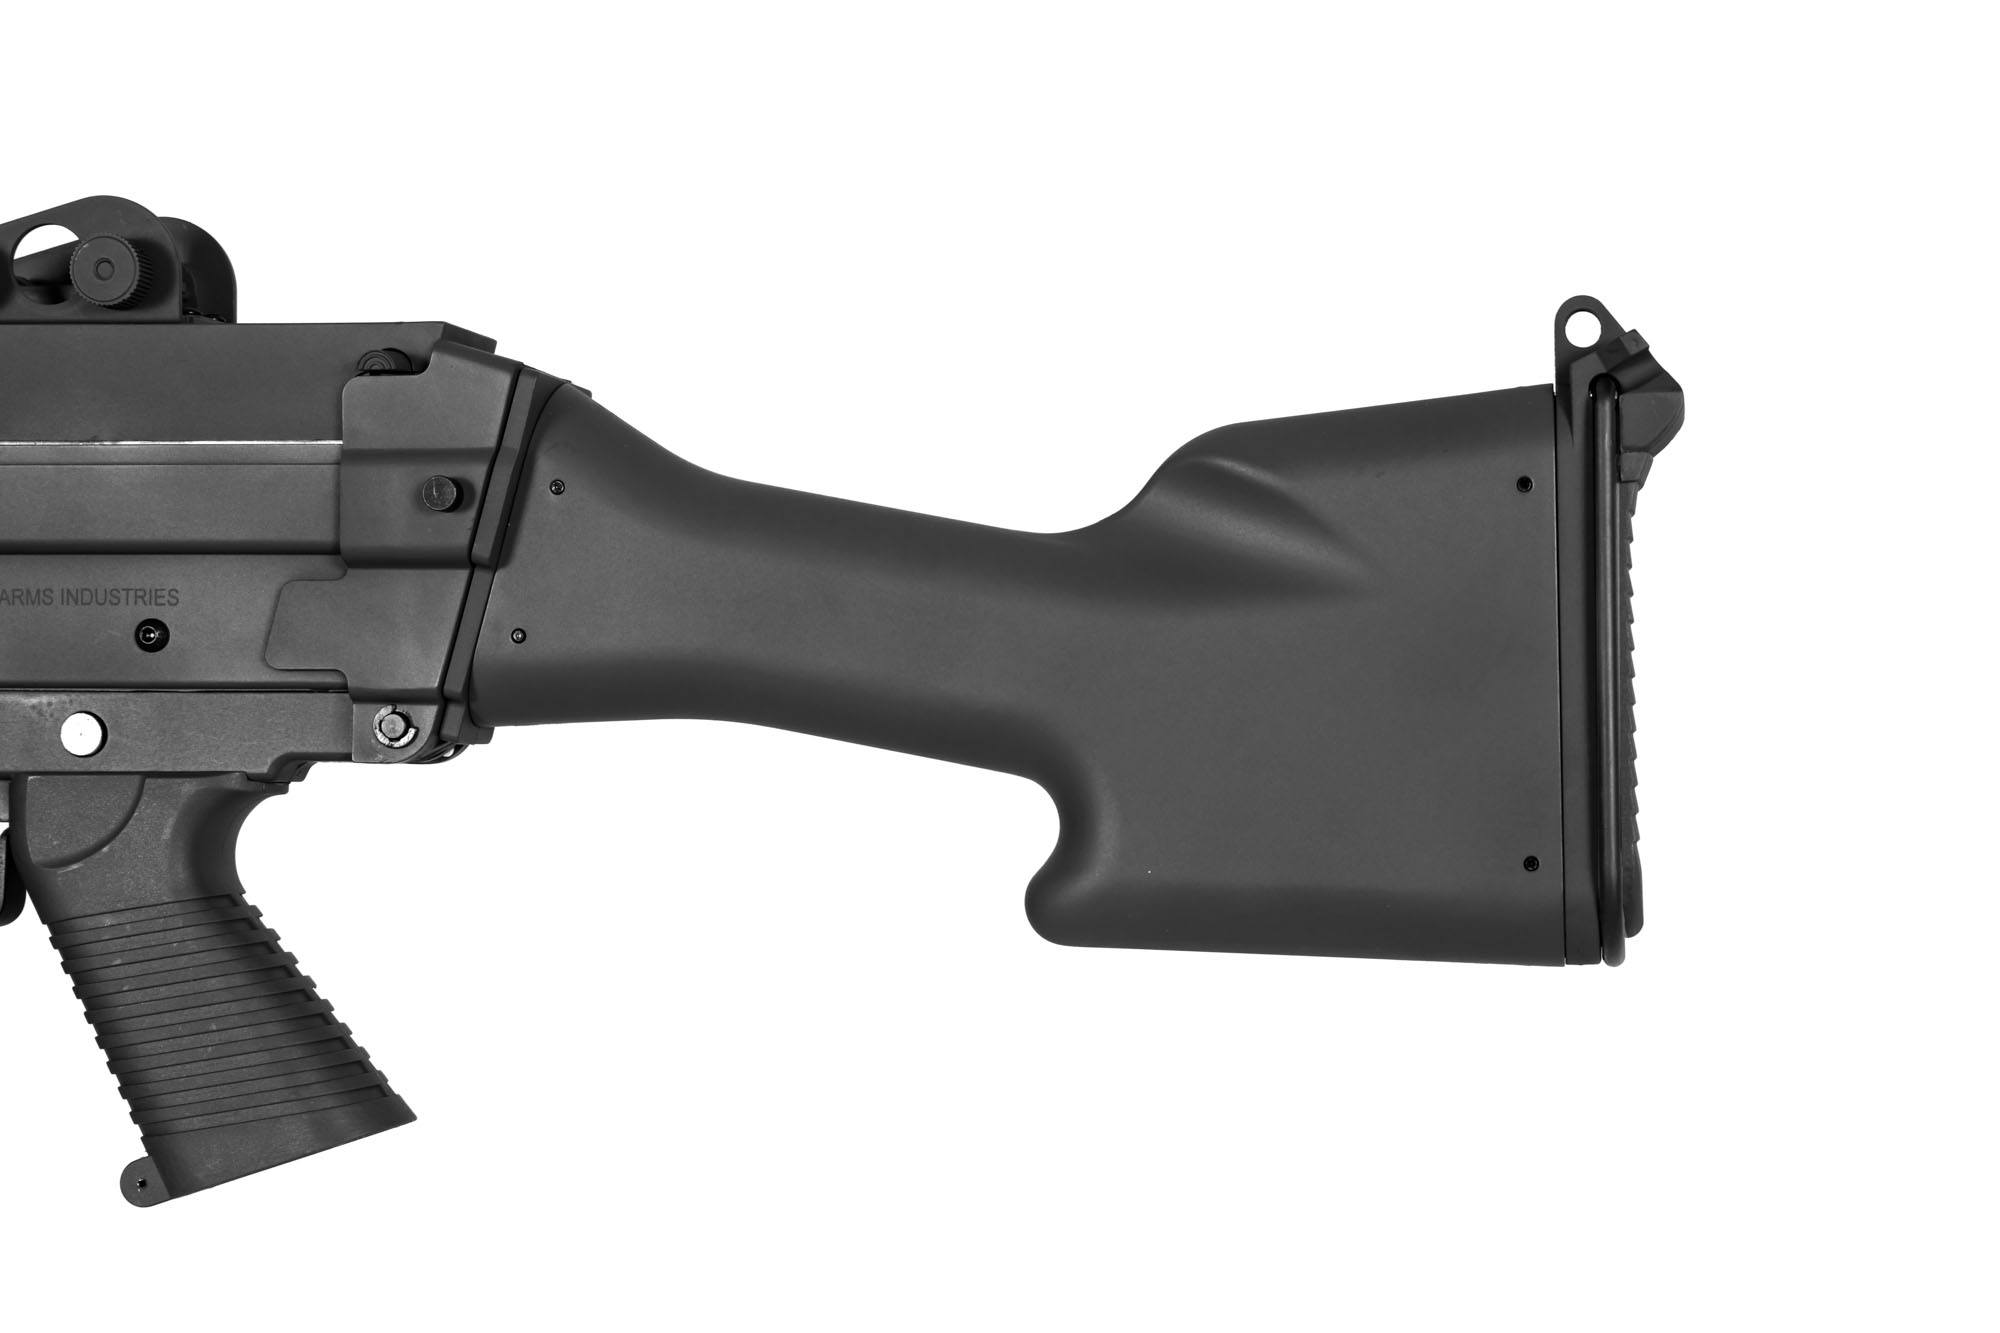 SA-249 MK2 CORE™ Maschinengewehr – Schwarz